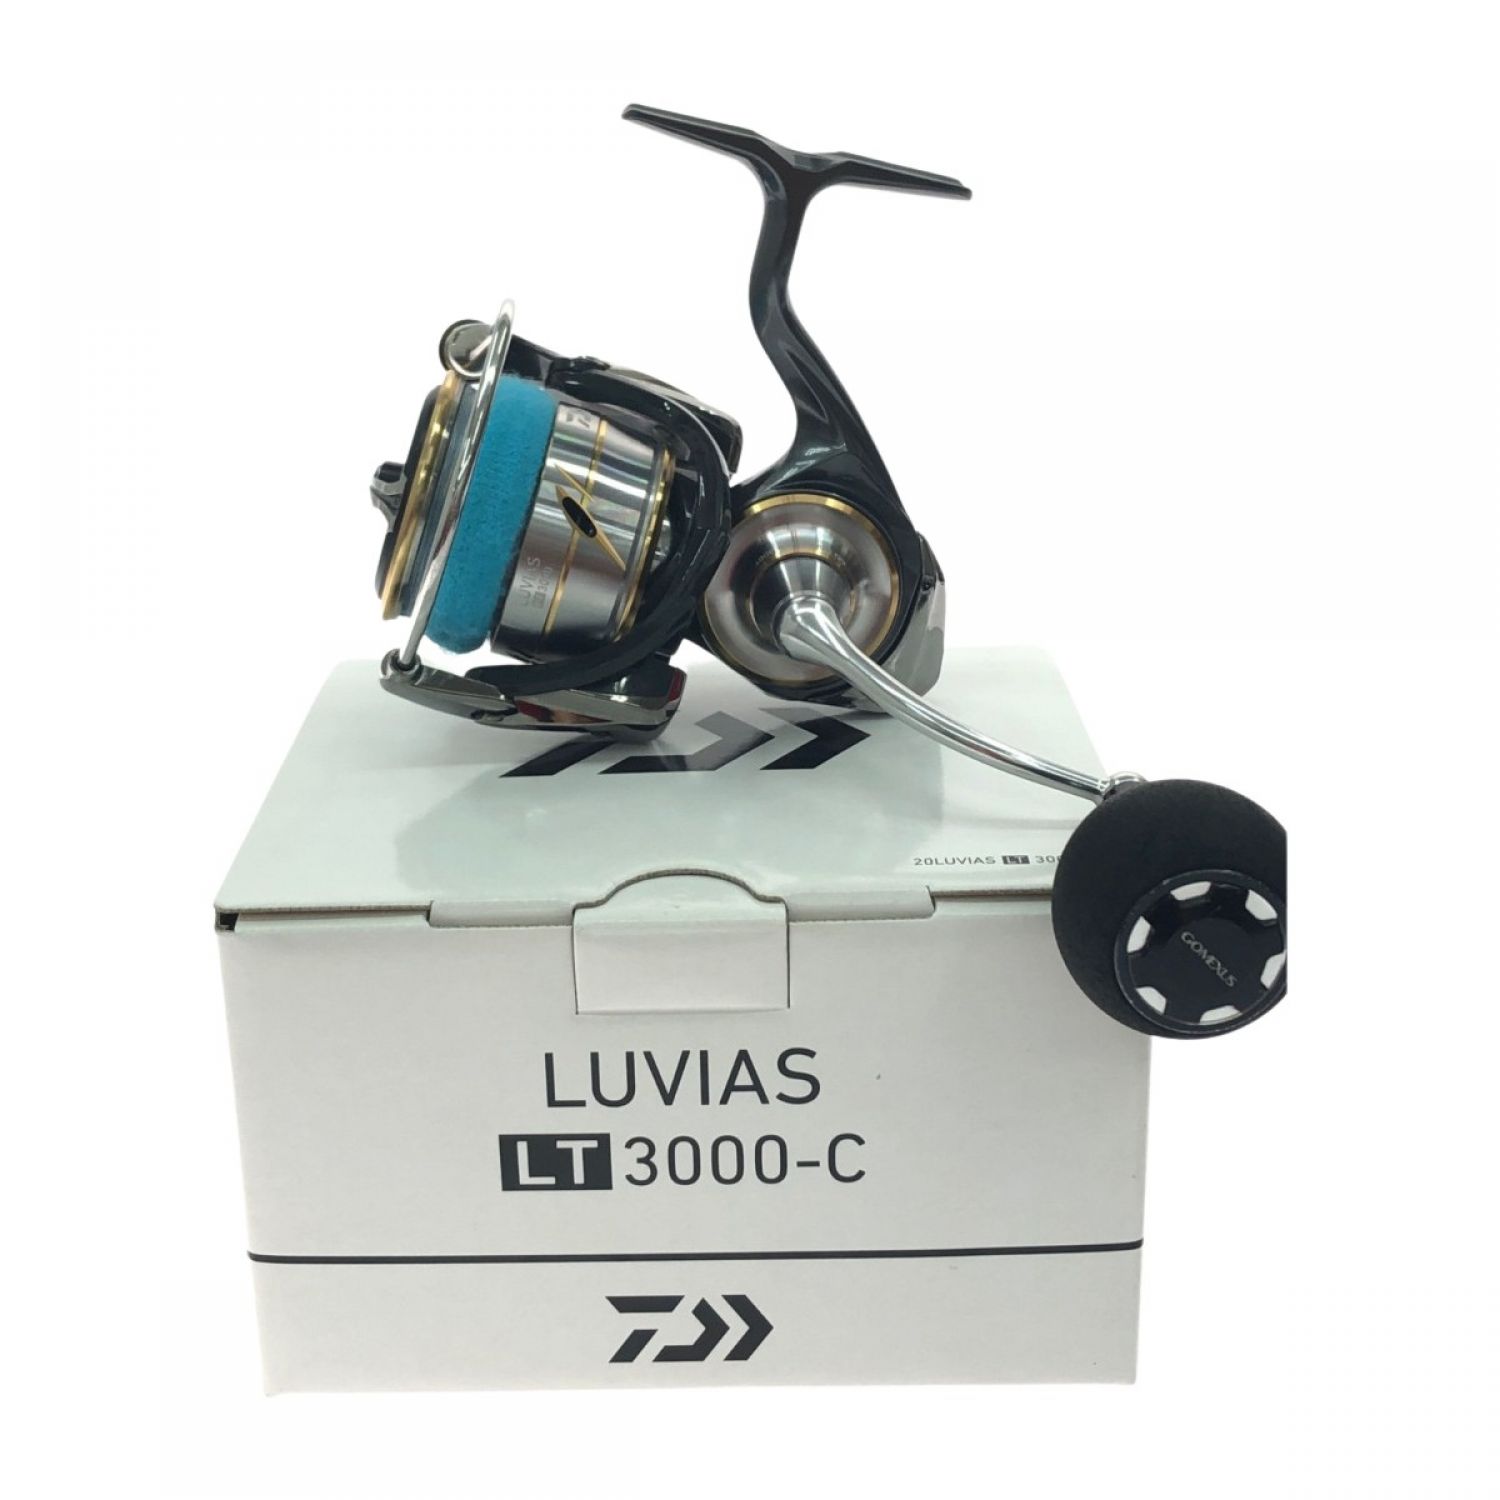 ダイワ(DAIWA) スピニングリール 20 ルビアス LT3000(2020モデル) リール